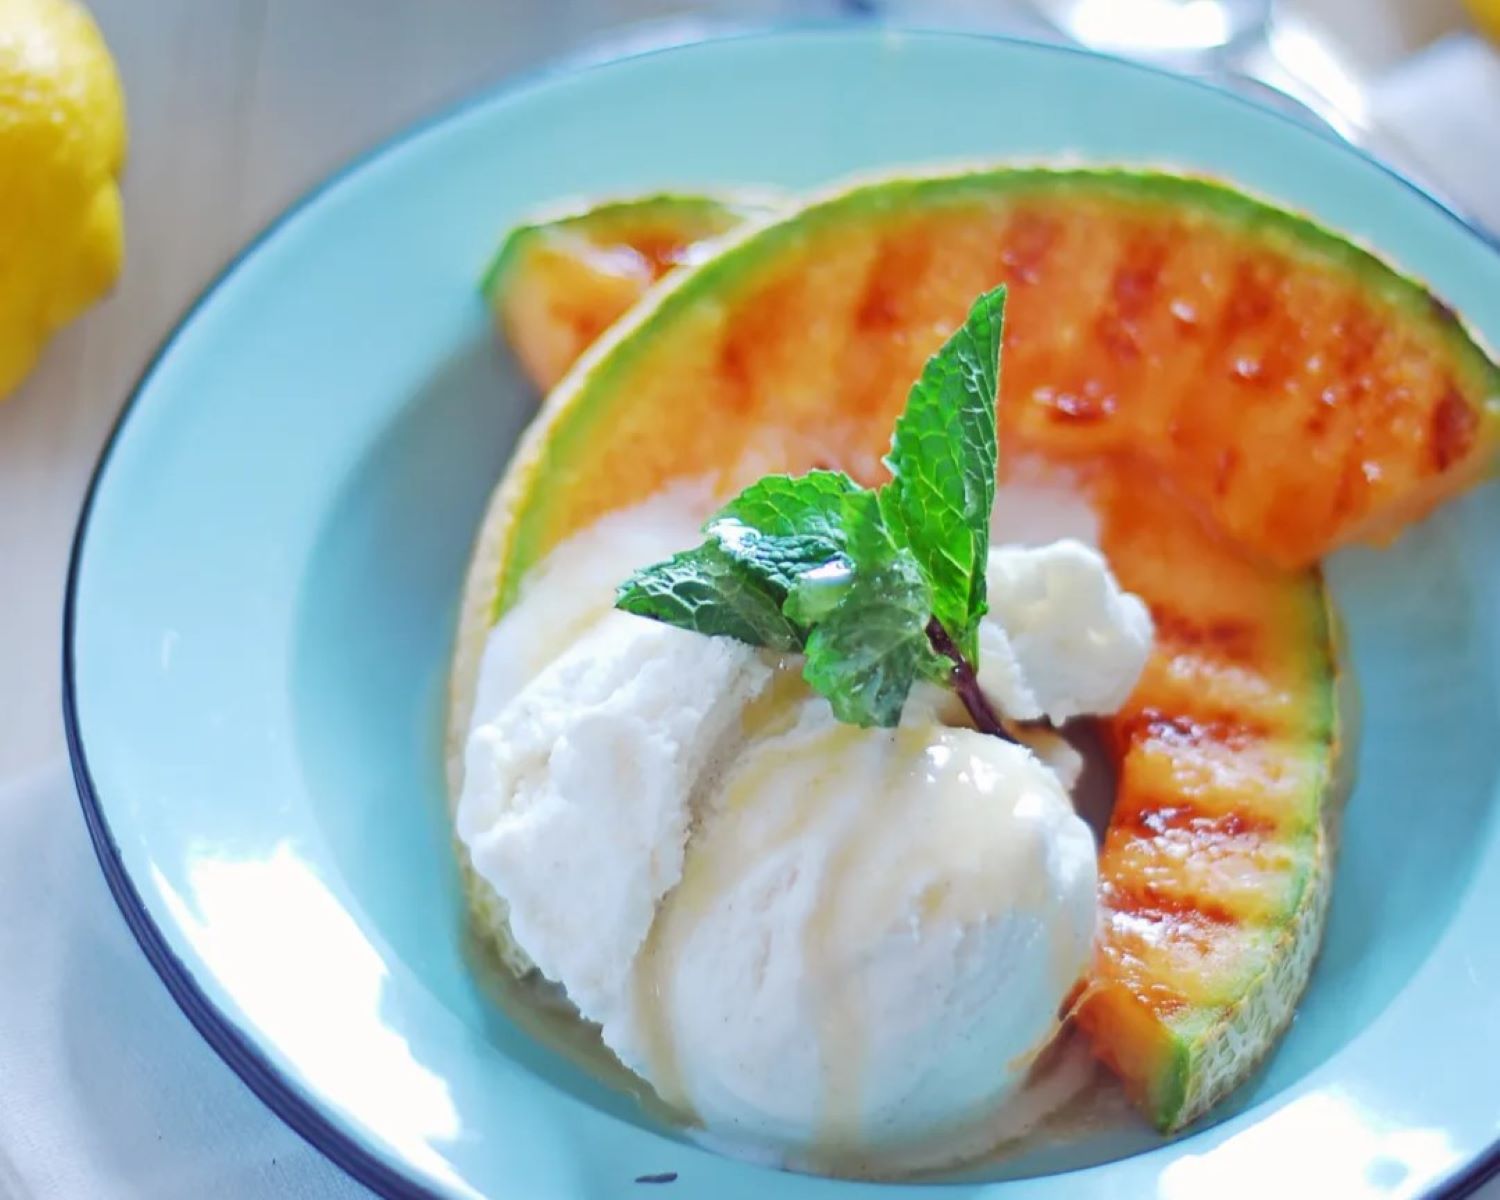 Delicious Melon Dessert: Vanilla Ice Cream With Honey Drizzle